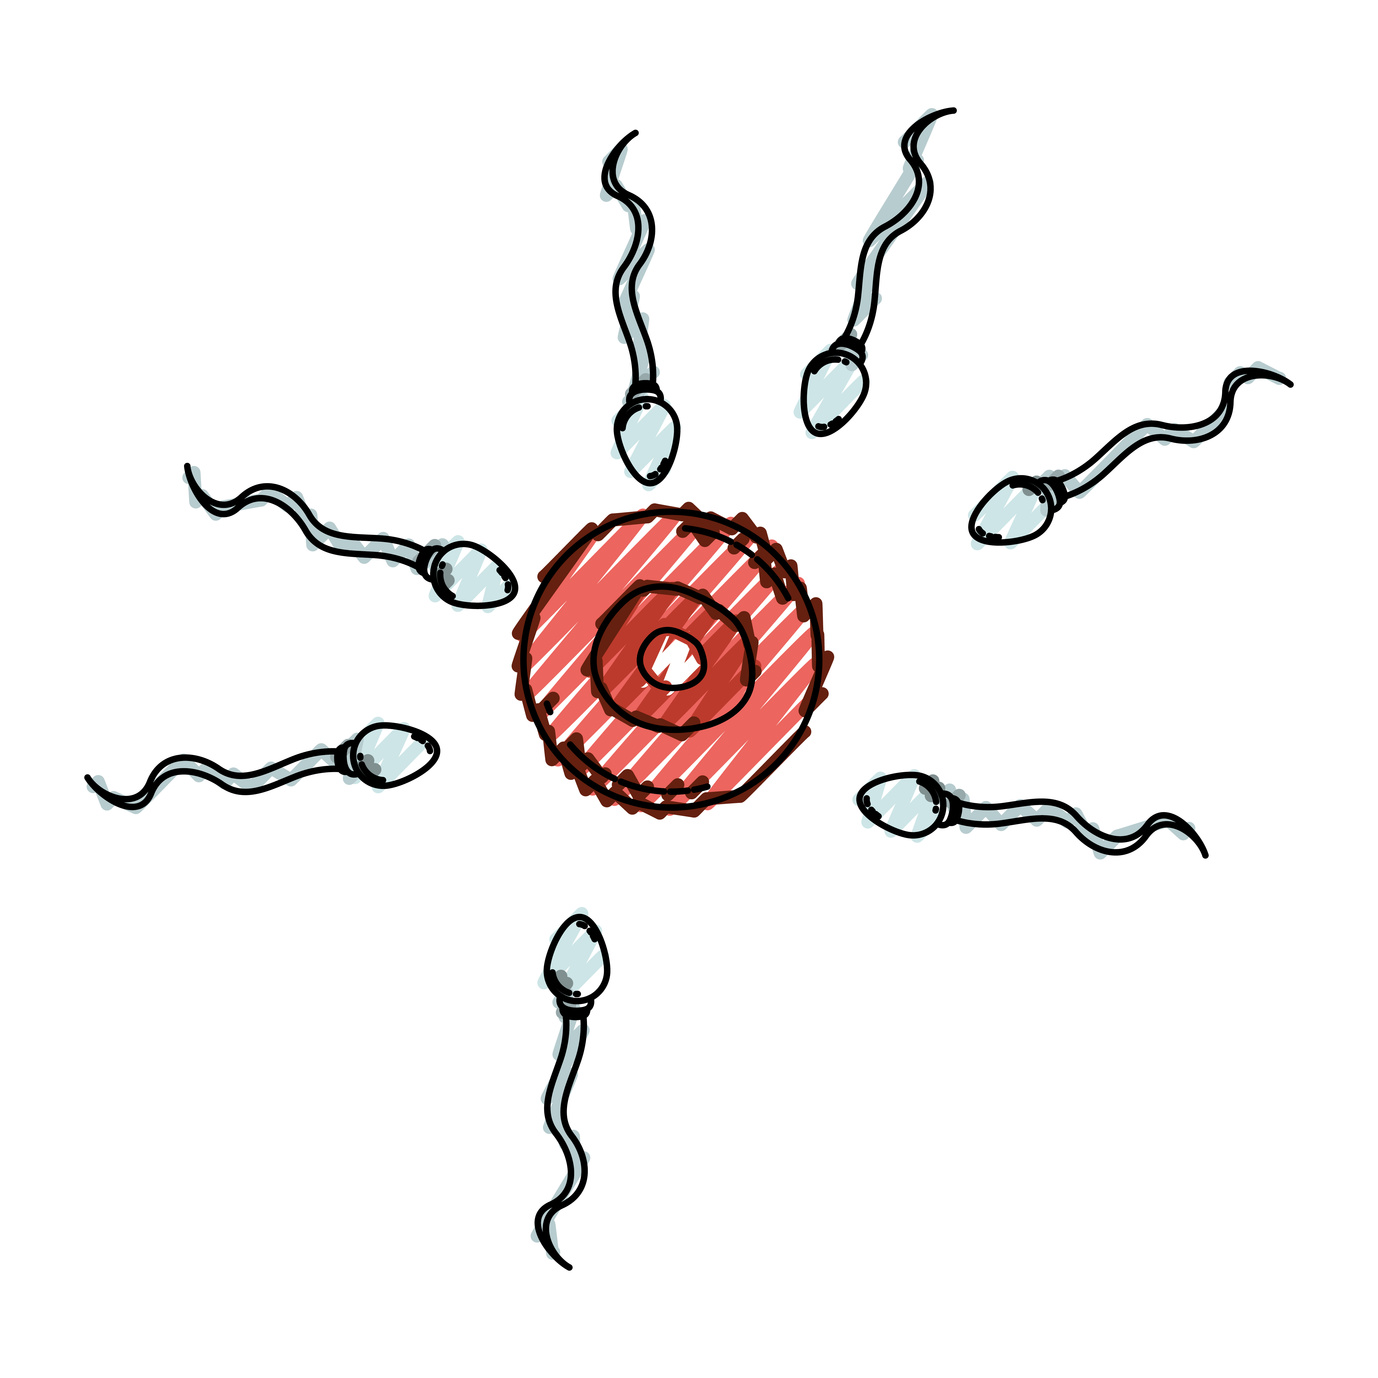 La fragmentación del ADN espermático presente en muchos abortos de repetición y fallos de implantación